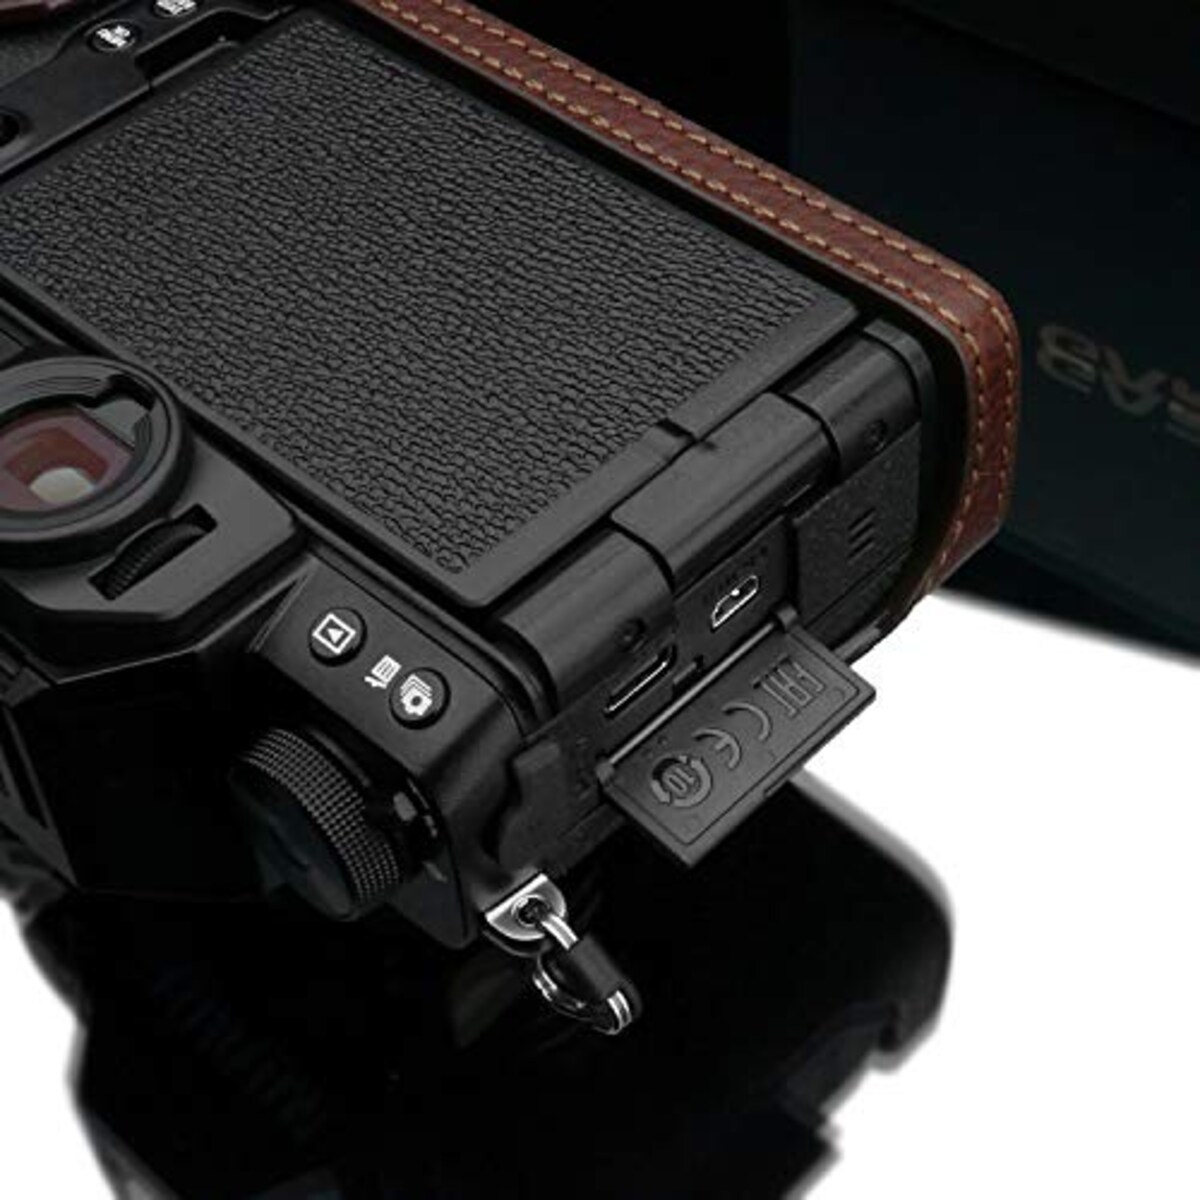  GARIZ FUJIFILM X-S10用 本革カメラケース XS-CHXS10BR ブラウン画像13 